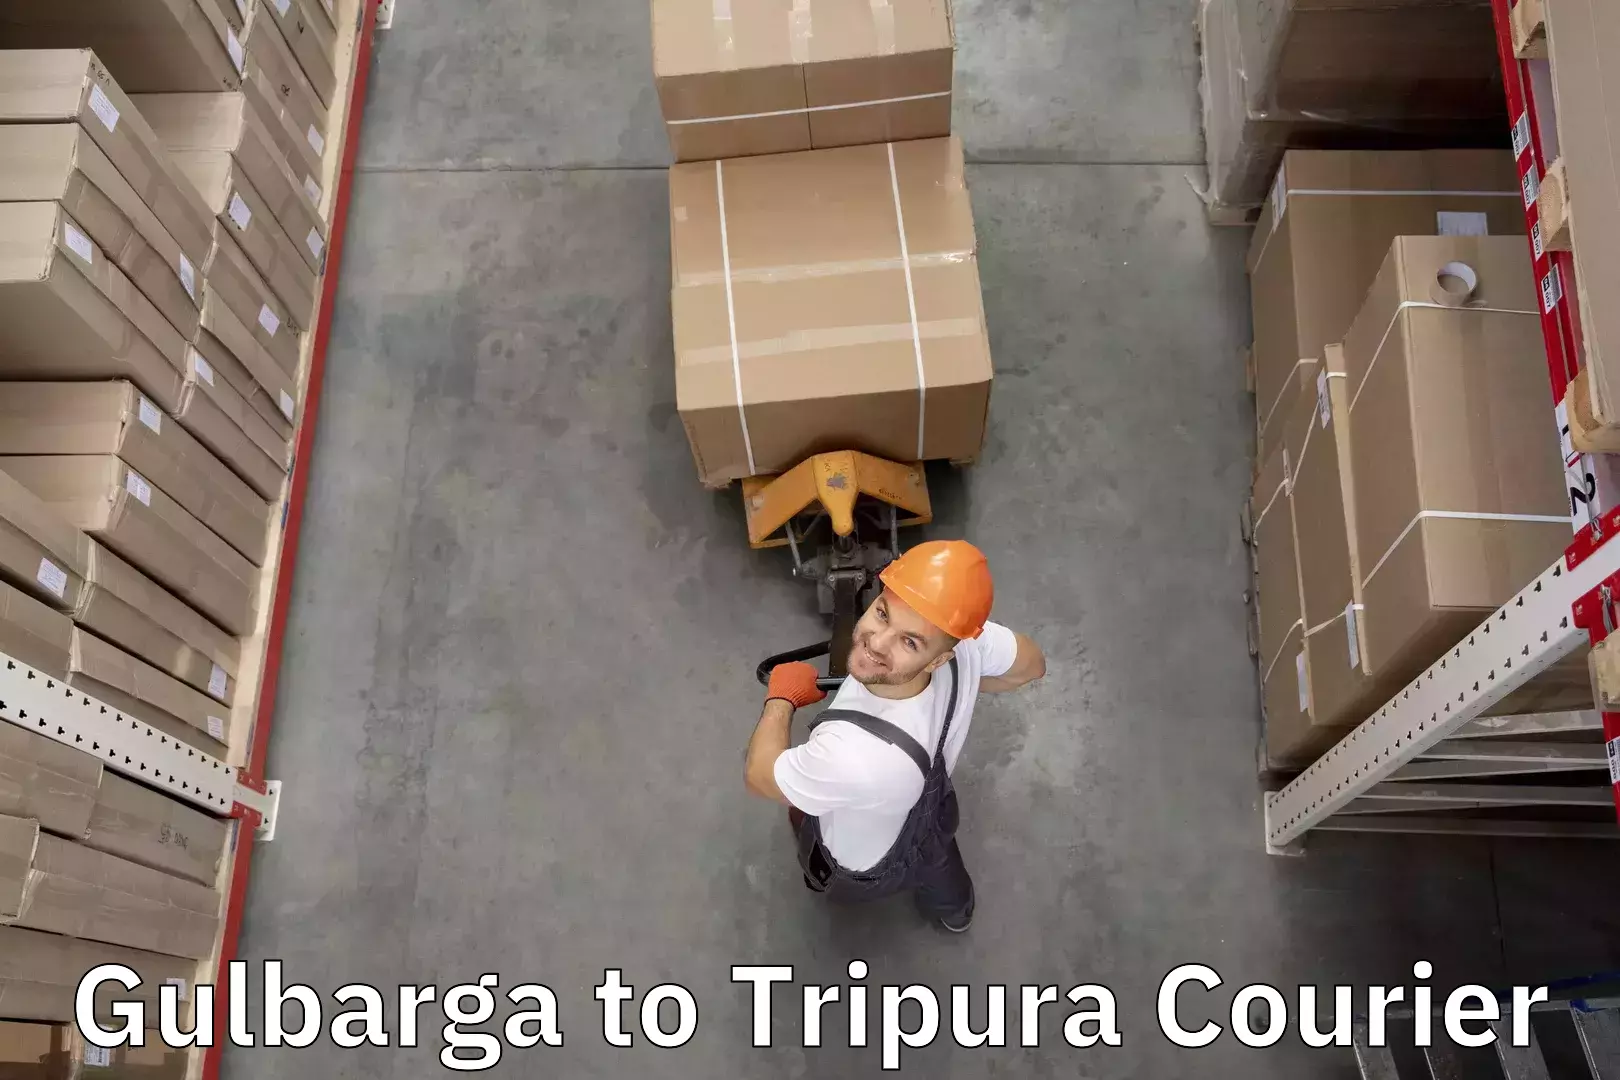 Door-to-door baggage service Gulbarga to Tripura